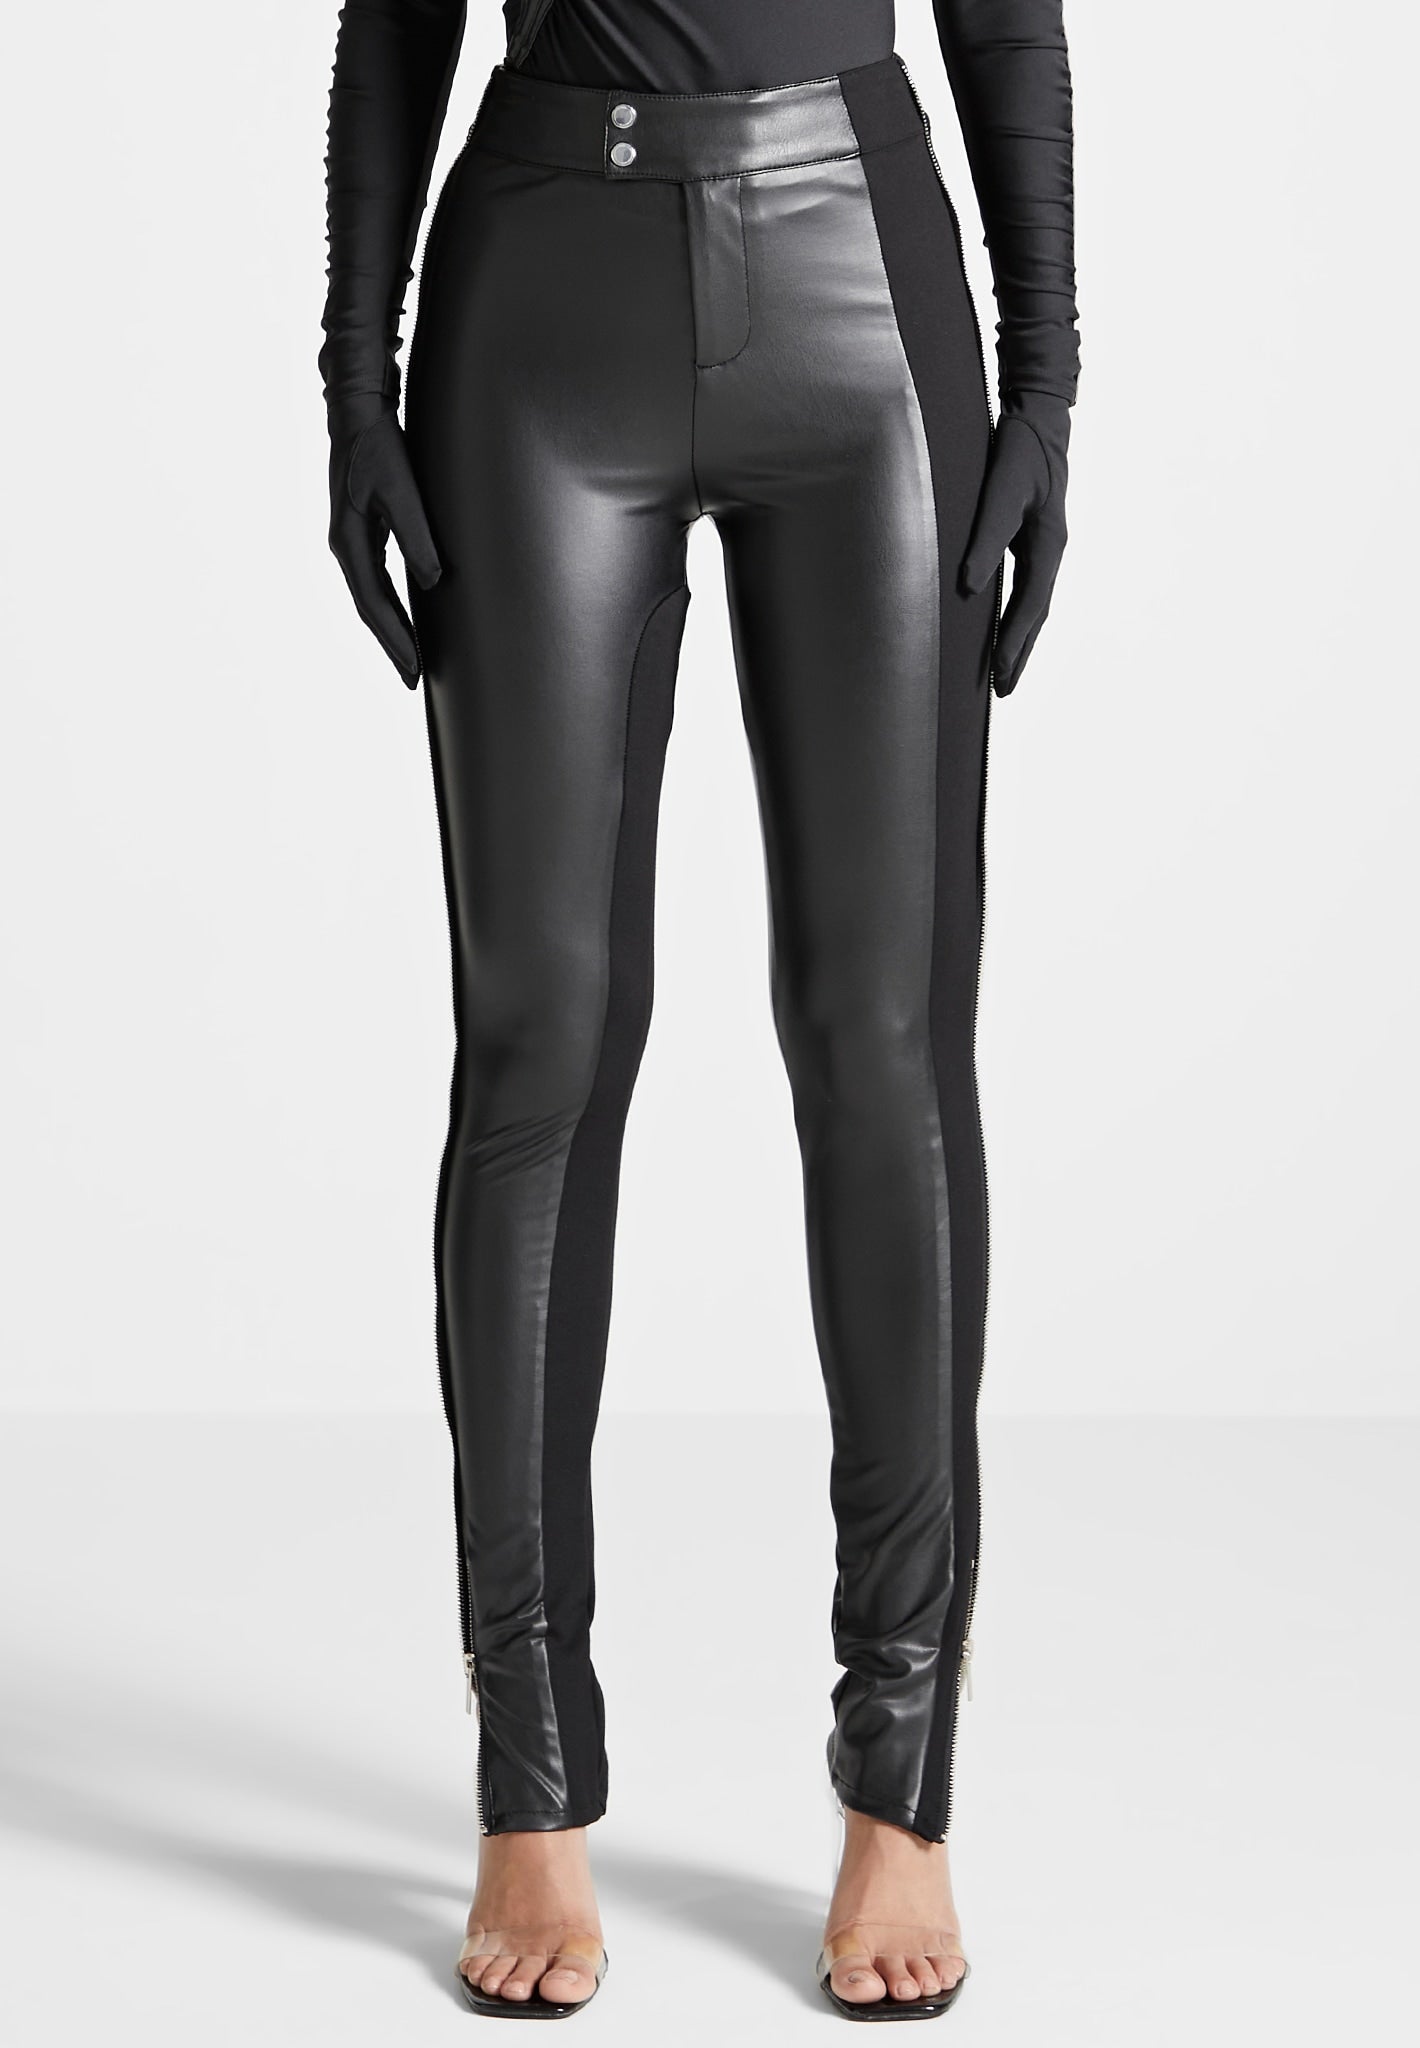 Plus Size Reflector Black Faux Leather Leggings Bodysuit Jumpsuit